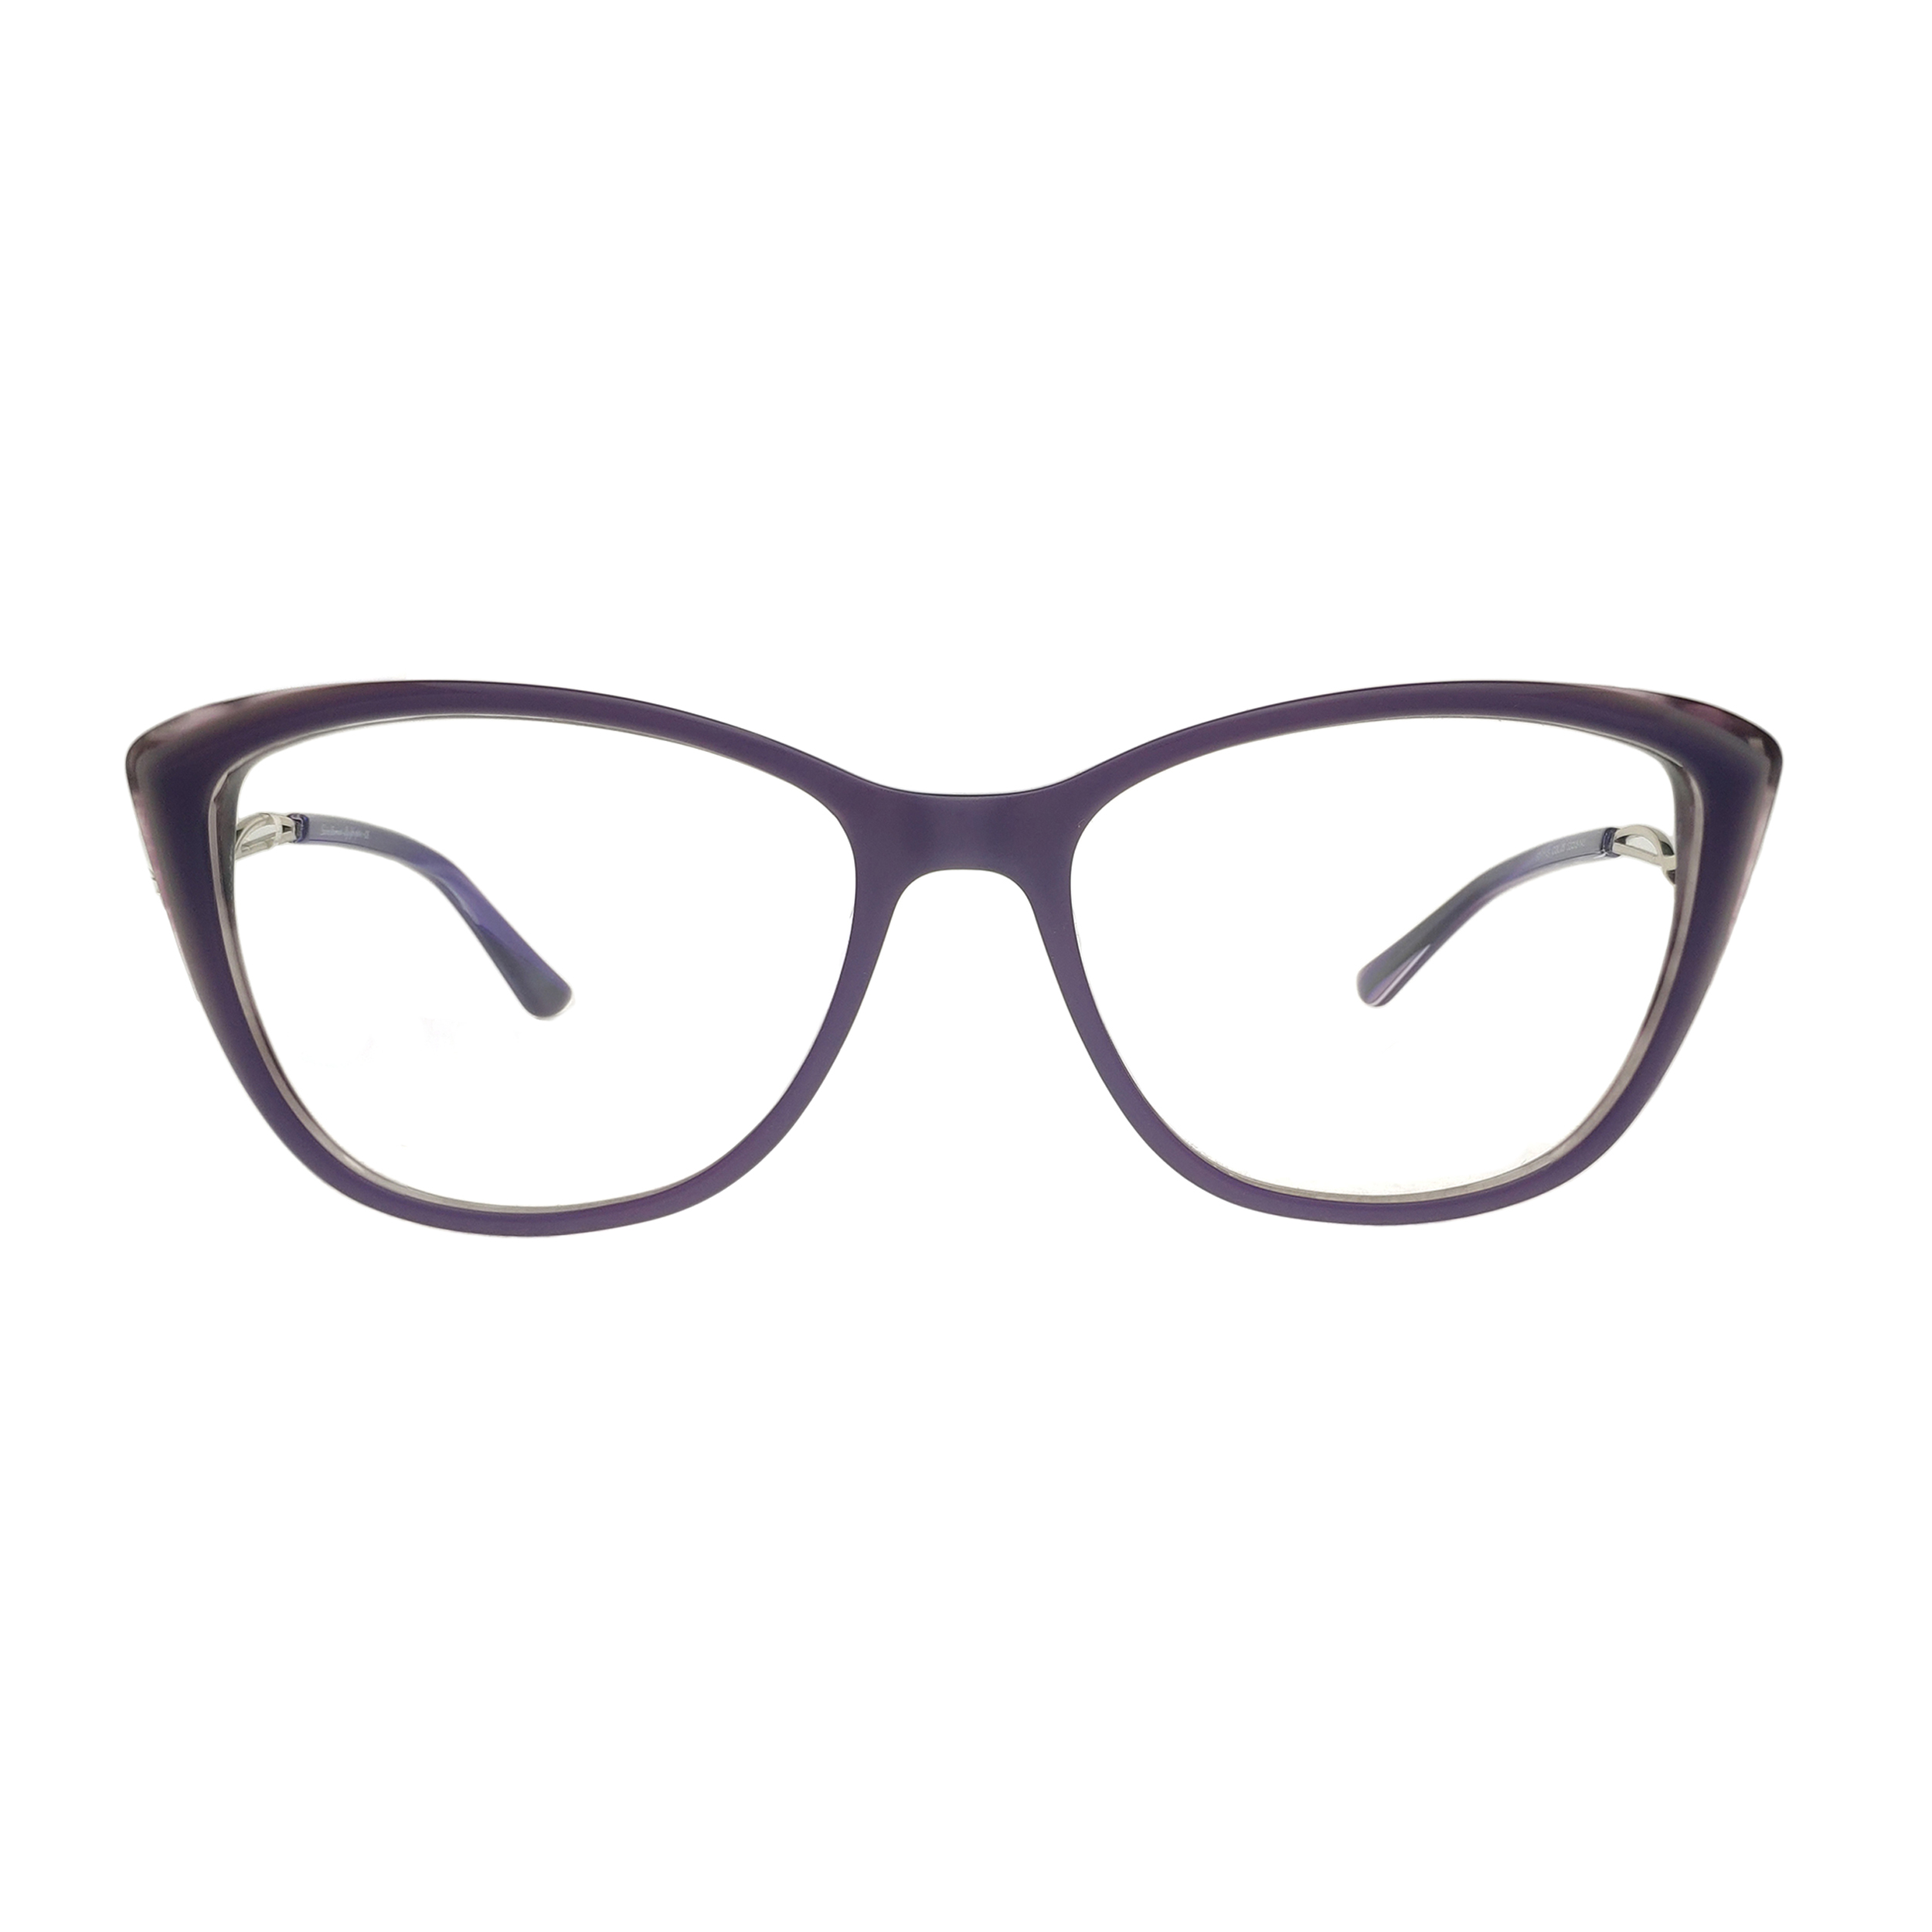 فریم عینک طبی زنانه مدل 734 - SD-1145C05 - 52.18.143